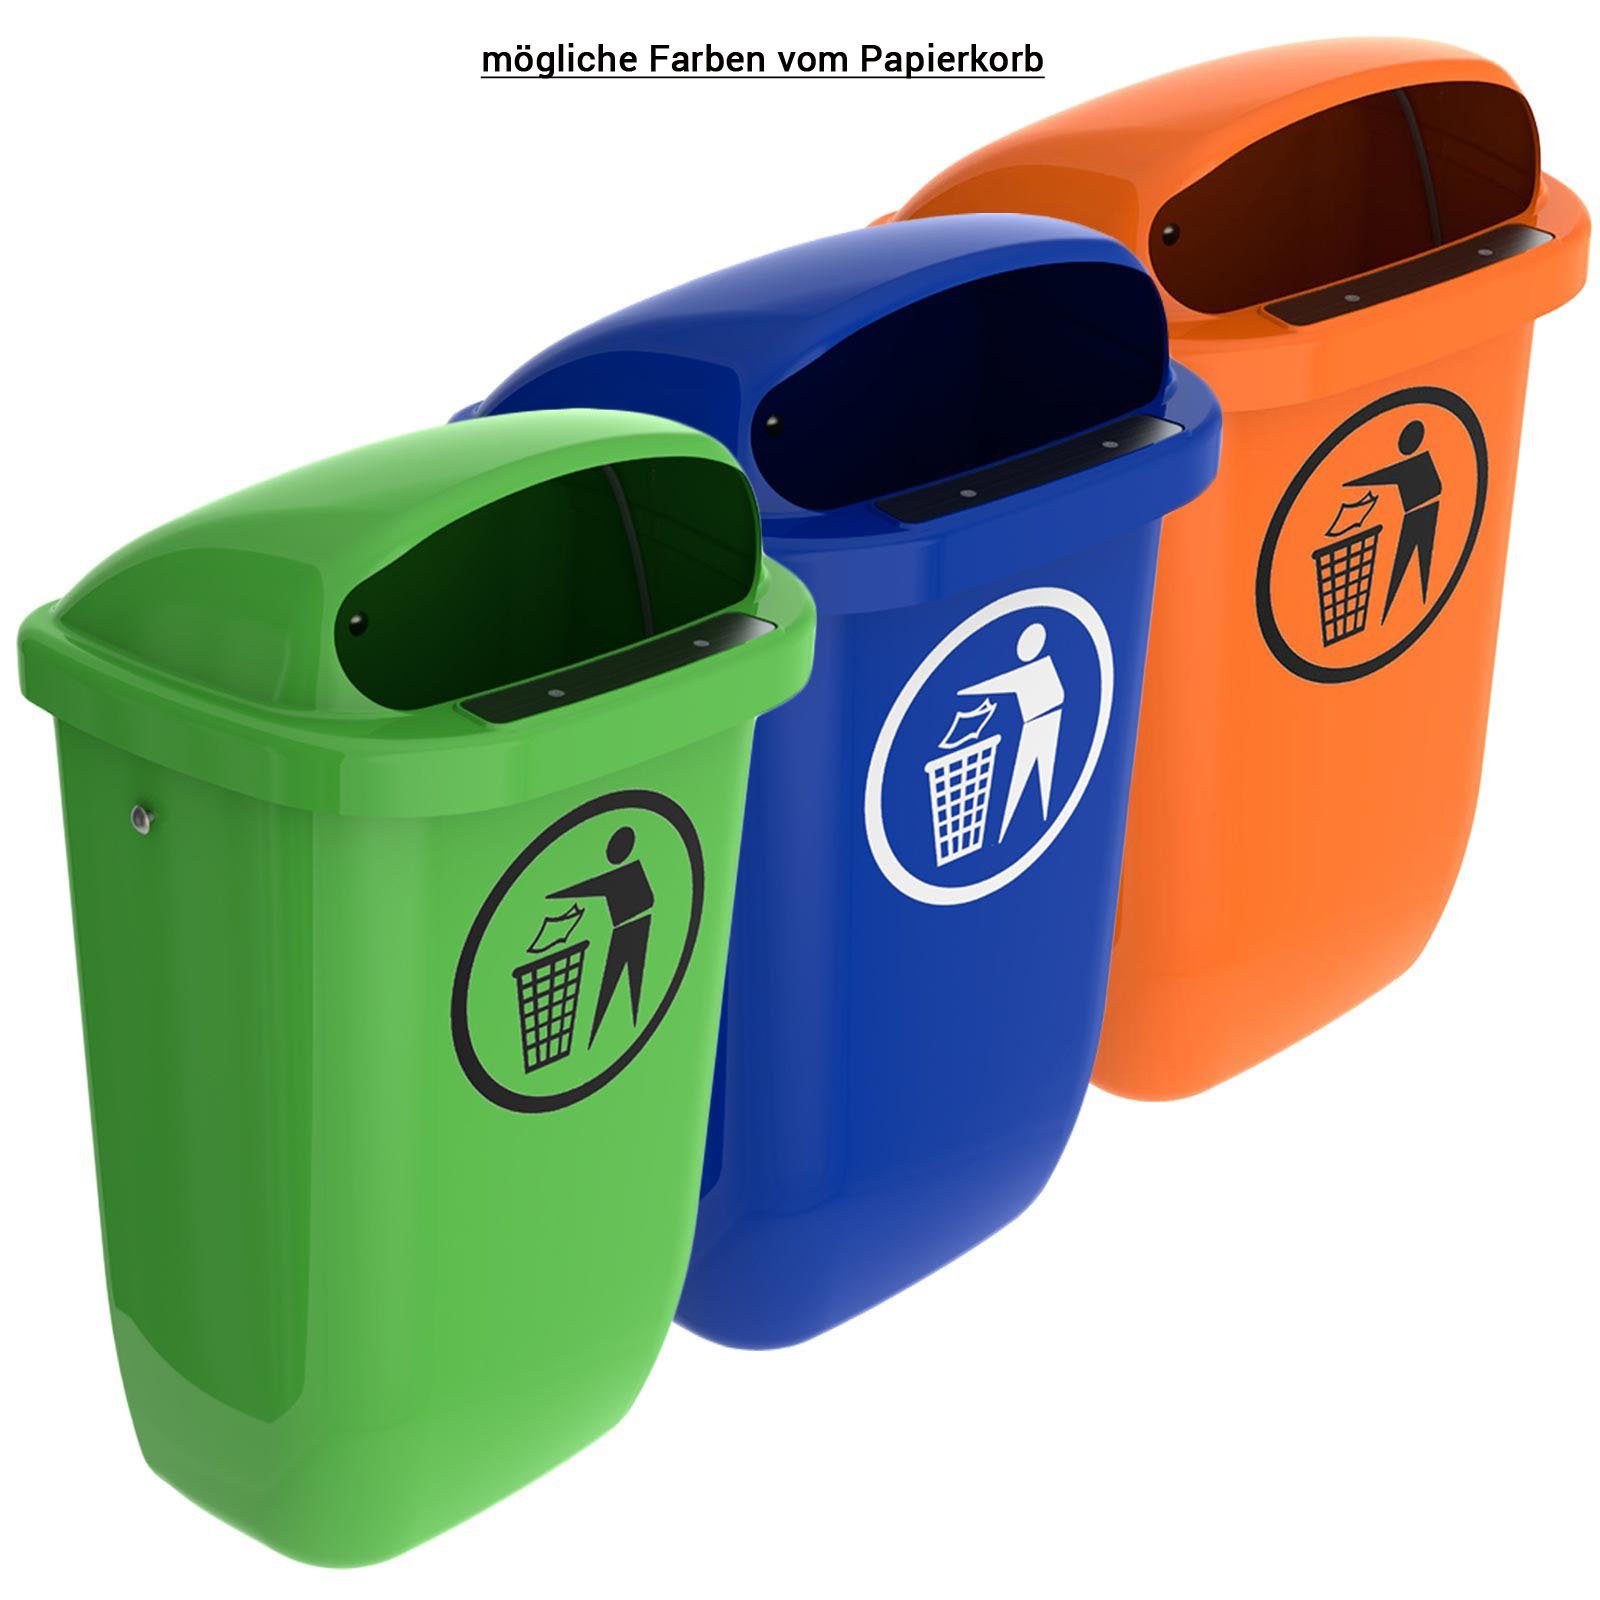 Regenhaube Abfallbehälter Papierkorb Set SULO Mülleimer Sulo Original mit grün